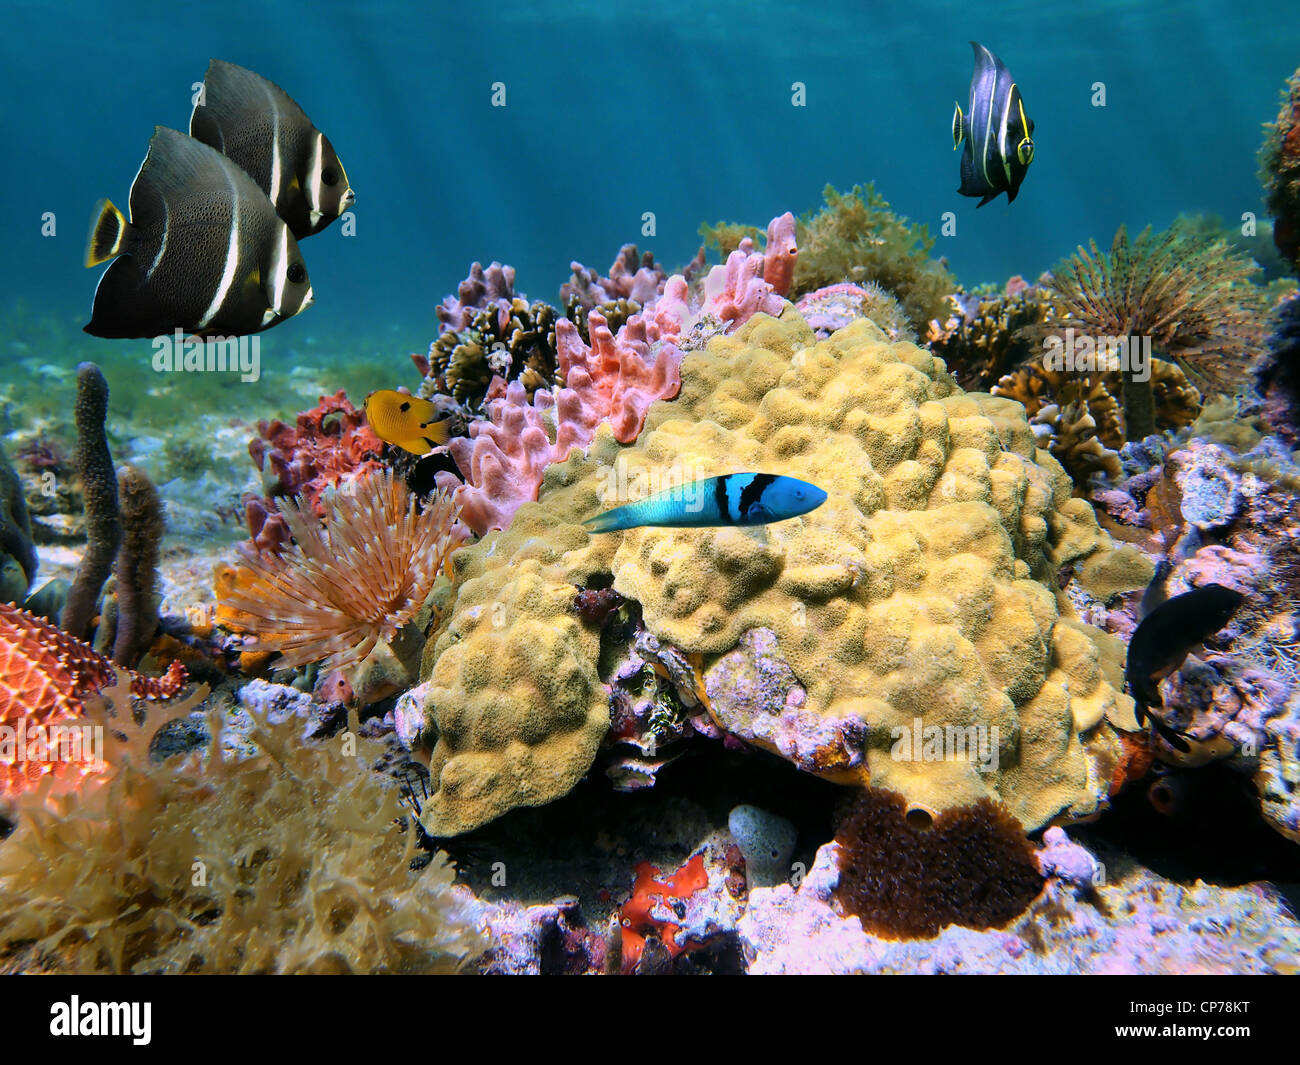 La vie sous-marine de la mer couleur moutarde avec Hill corail et poisson tropique d'un des fonds marins de la mer des Caraïbes, le Costa Rica Banque D'Images